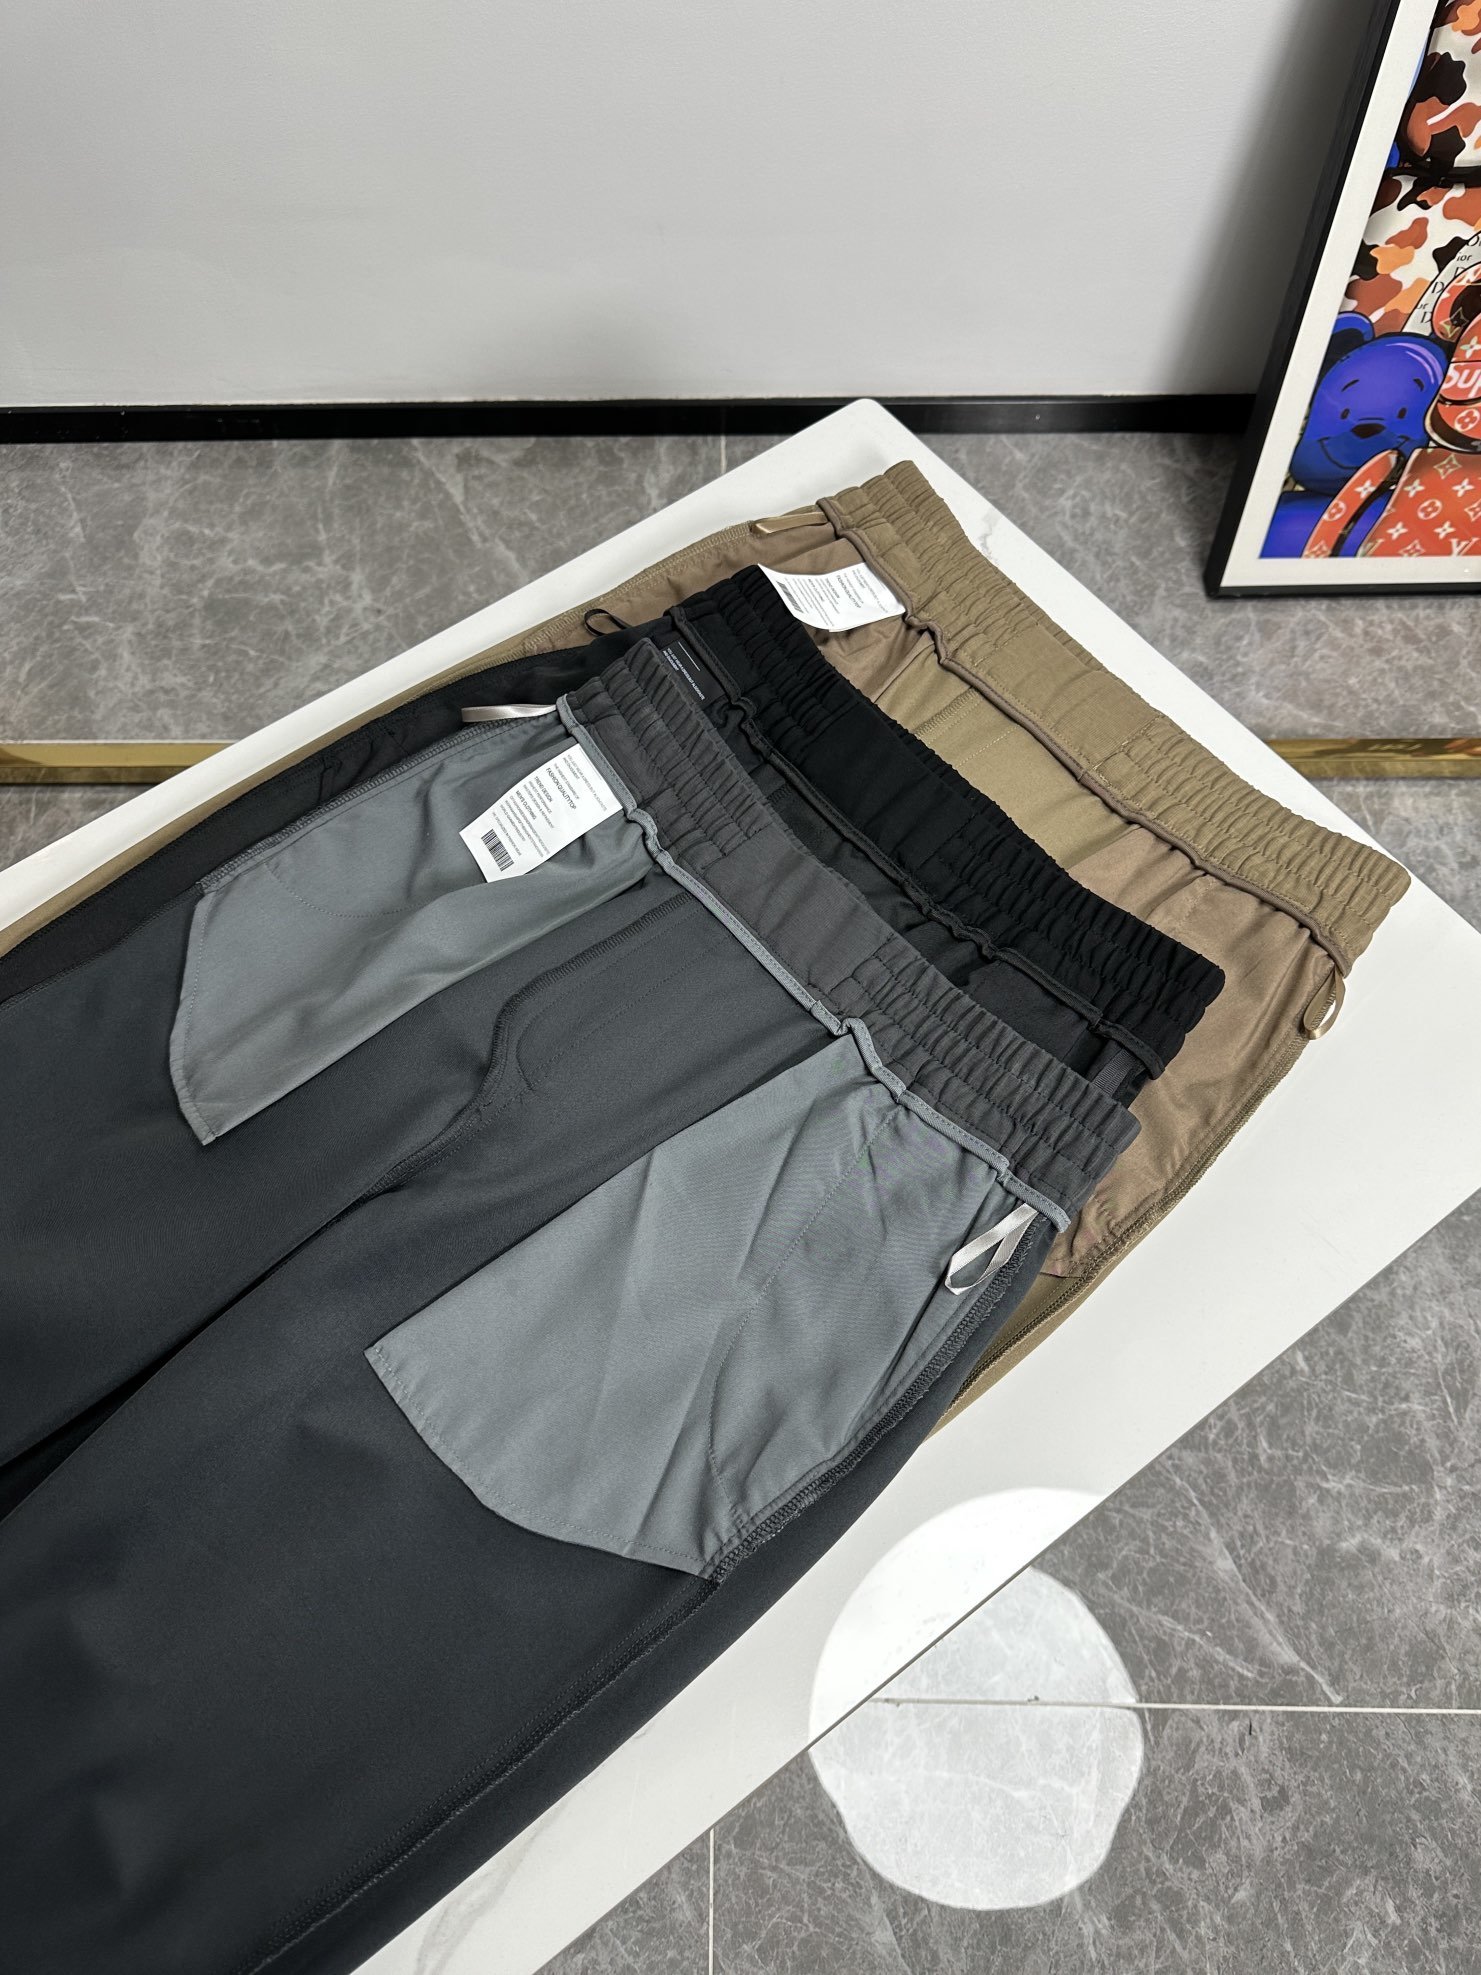 欧货D迪蓝家-24ss春夏新款进口纯棉质地复合面料再见基础款帅气卫裤.....一线时尚品牌出色独到的设计